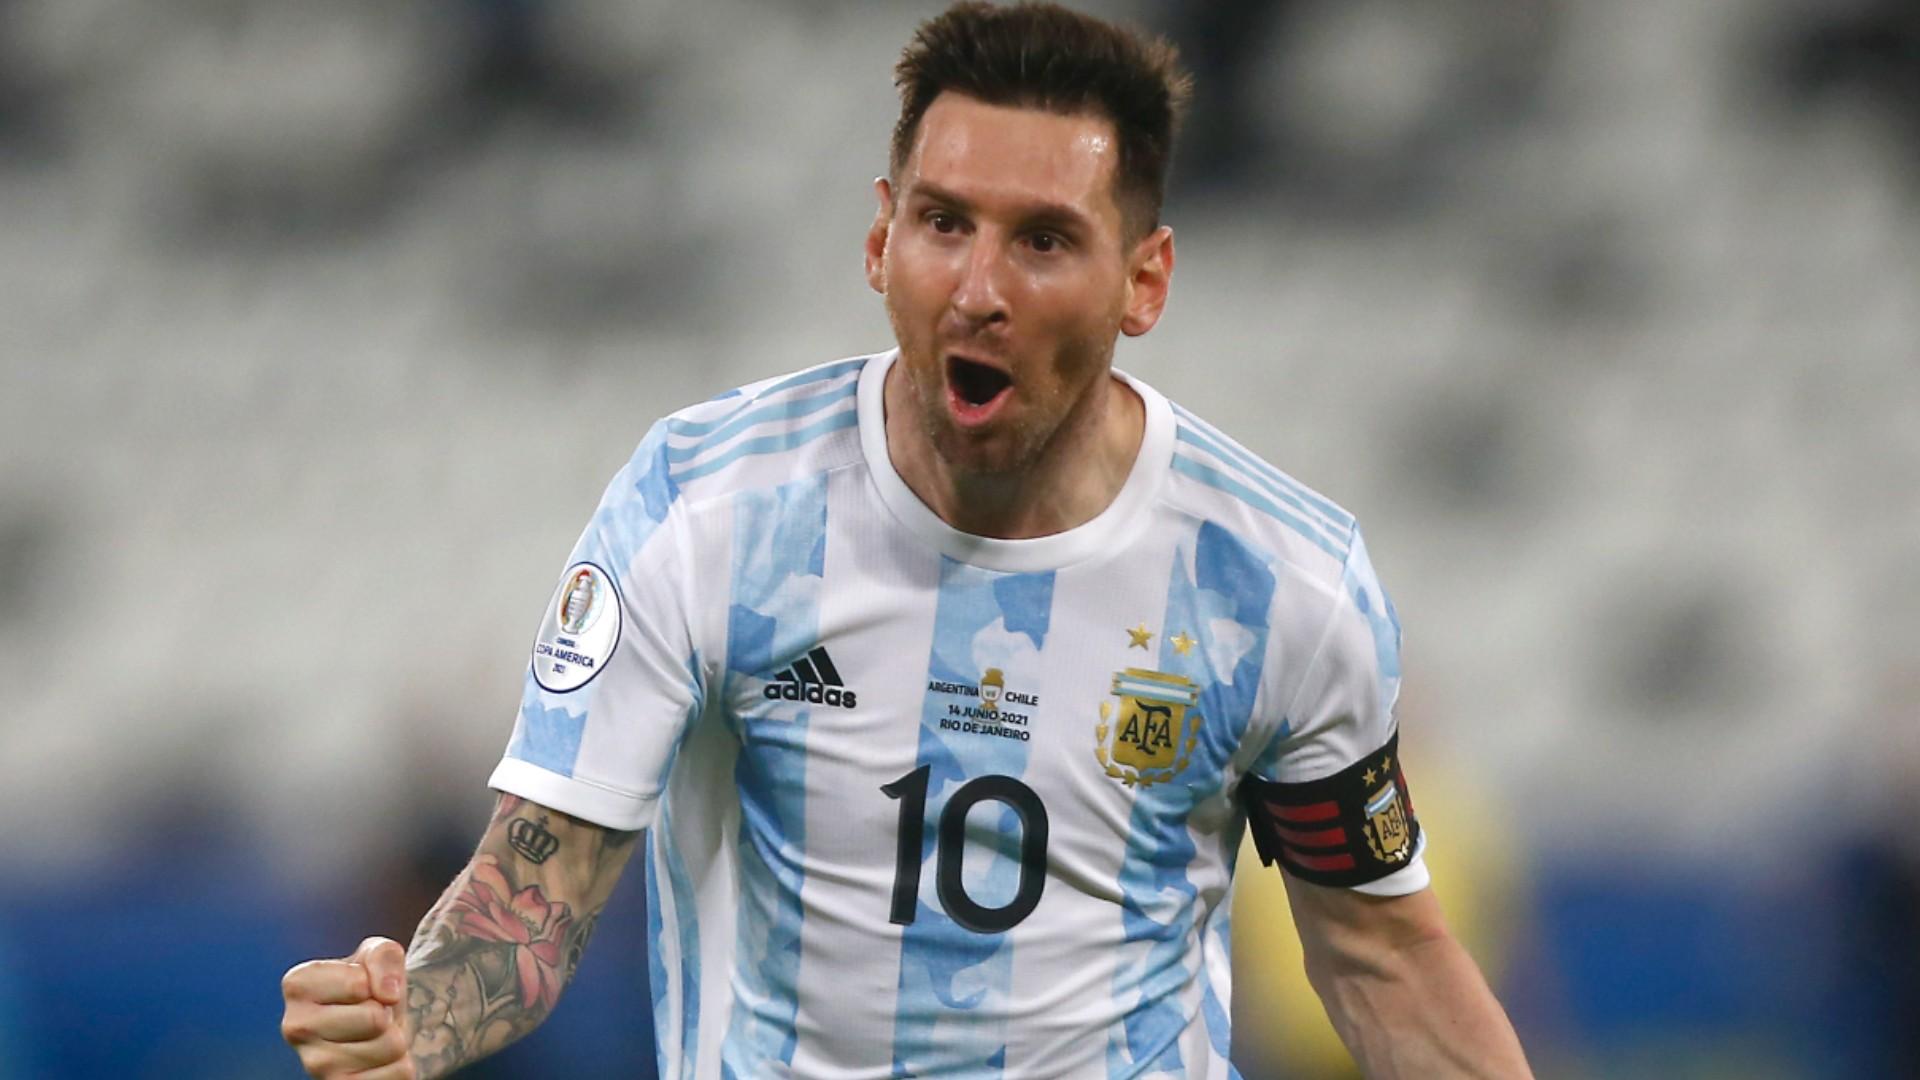 Bạn sẽ không muốn bỏ lỡ những chi tiết đầy cảm xúc của anh trong mỗi trận đấu. Hãy xem để được trải nghiệm những khoảnh khắc đáng nhớ và cổ vũ cho Messi và đội tuyển Argentina.